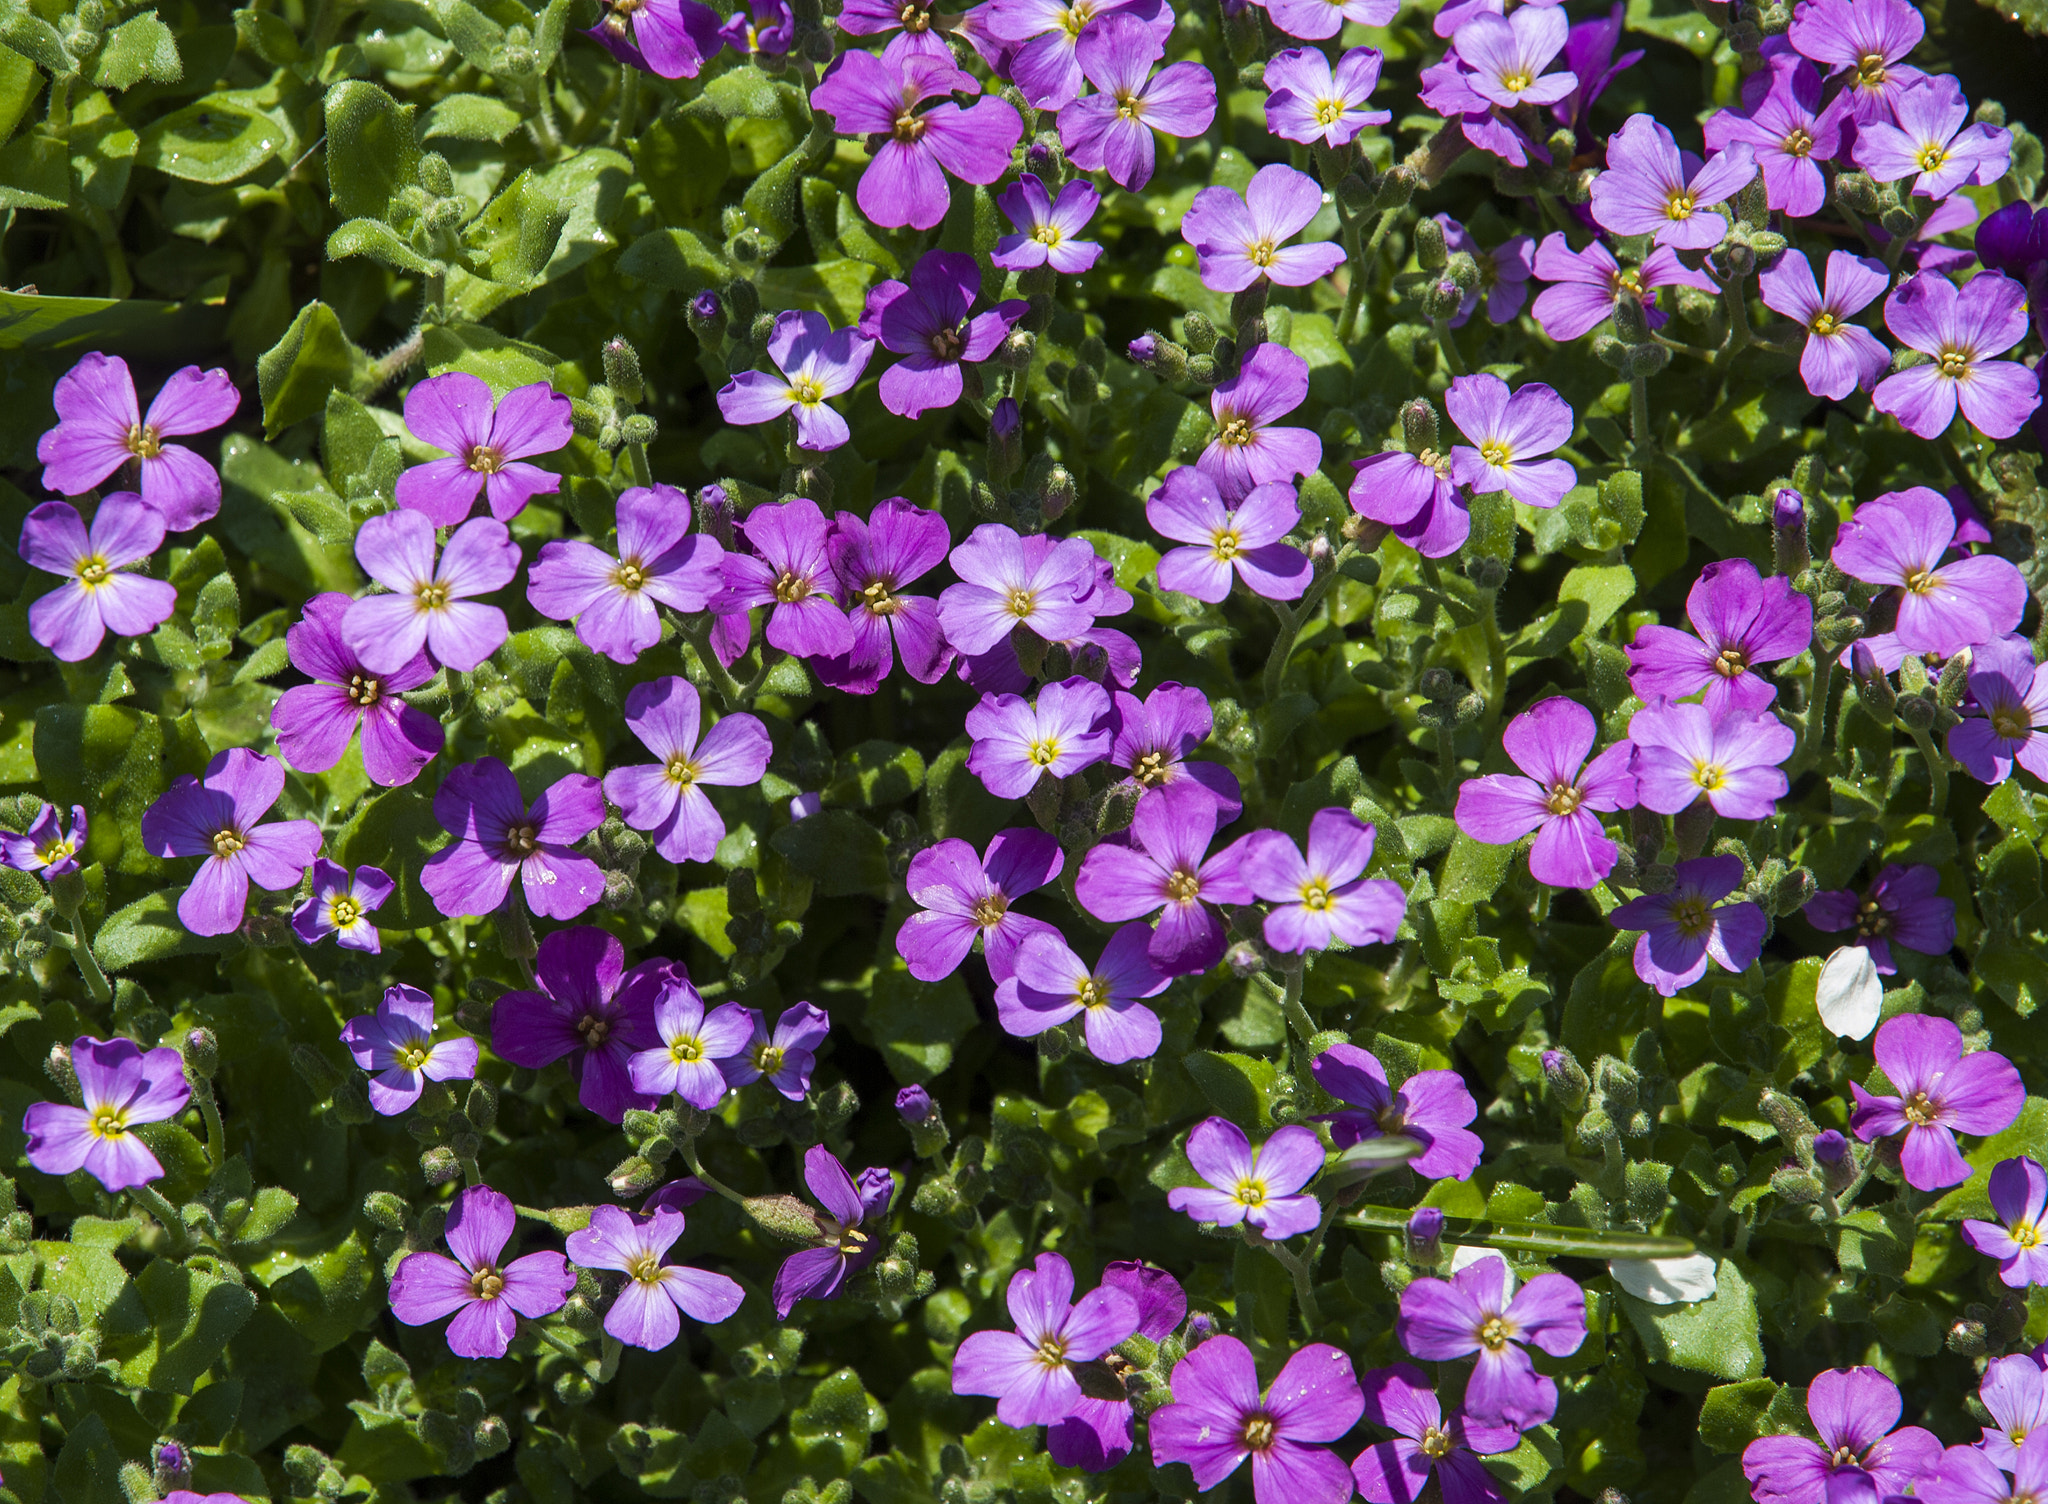 Nikon D80 + Nikon AF-S DX Nikkor 16-85mm F3.5-5.6G ED VR sample photo. Small violet flowers photography